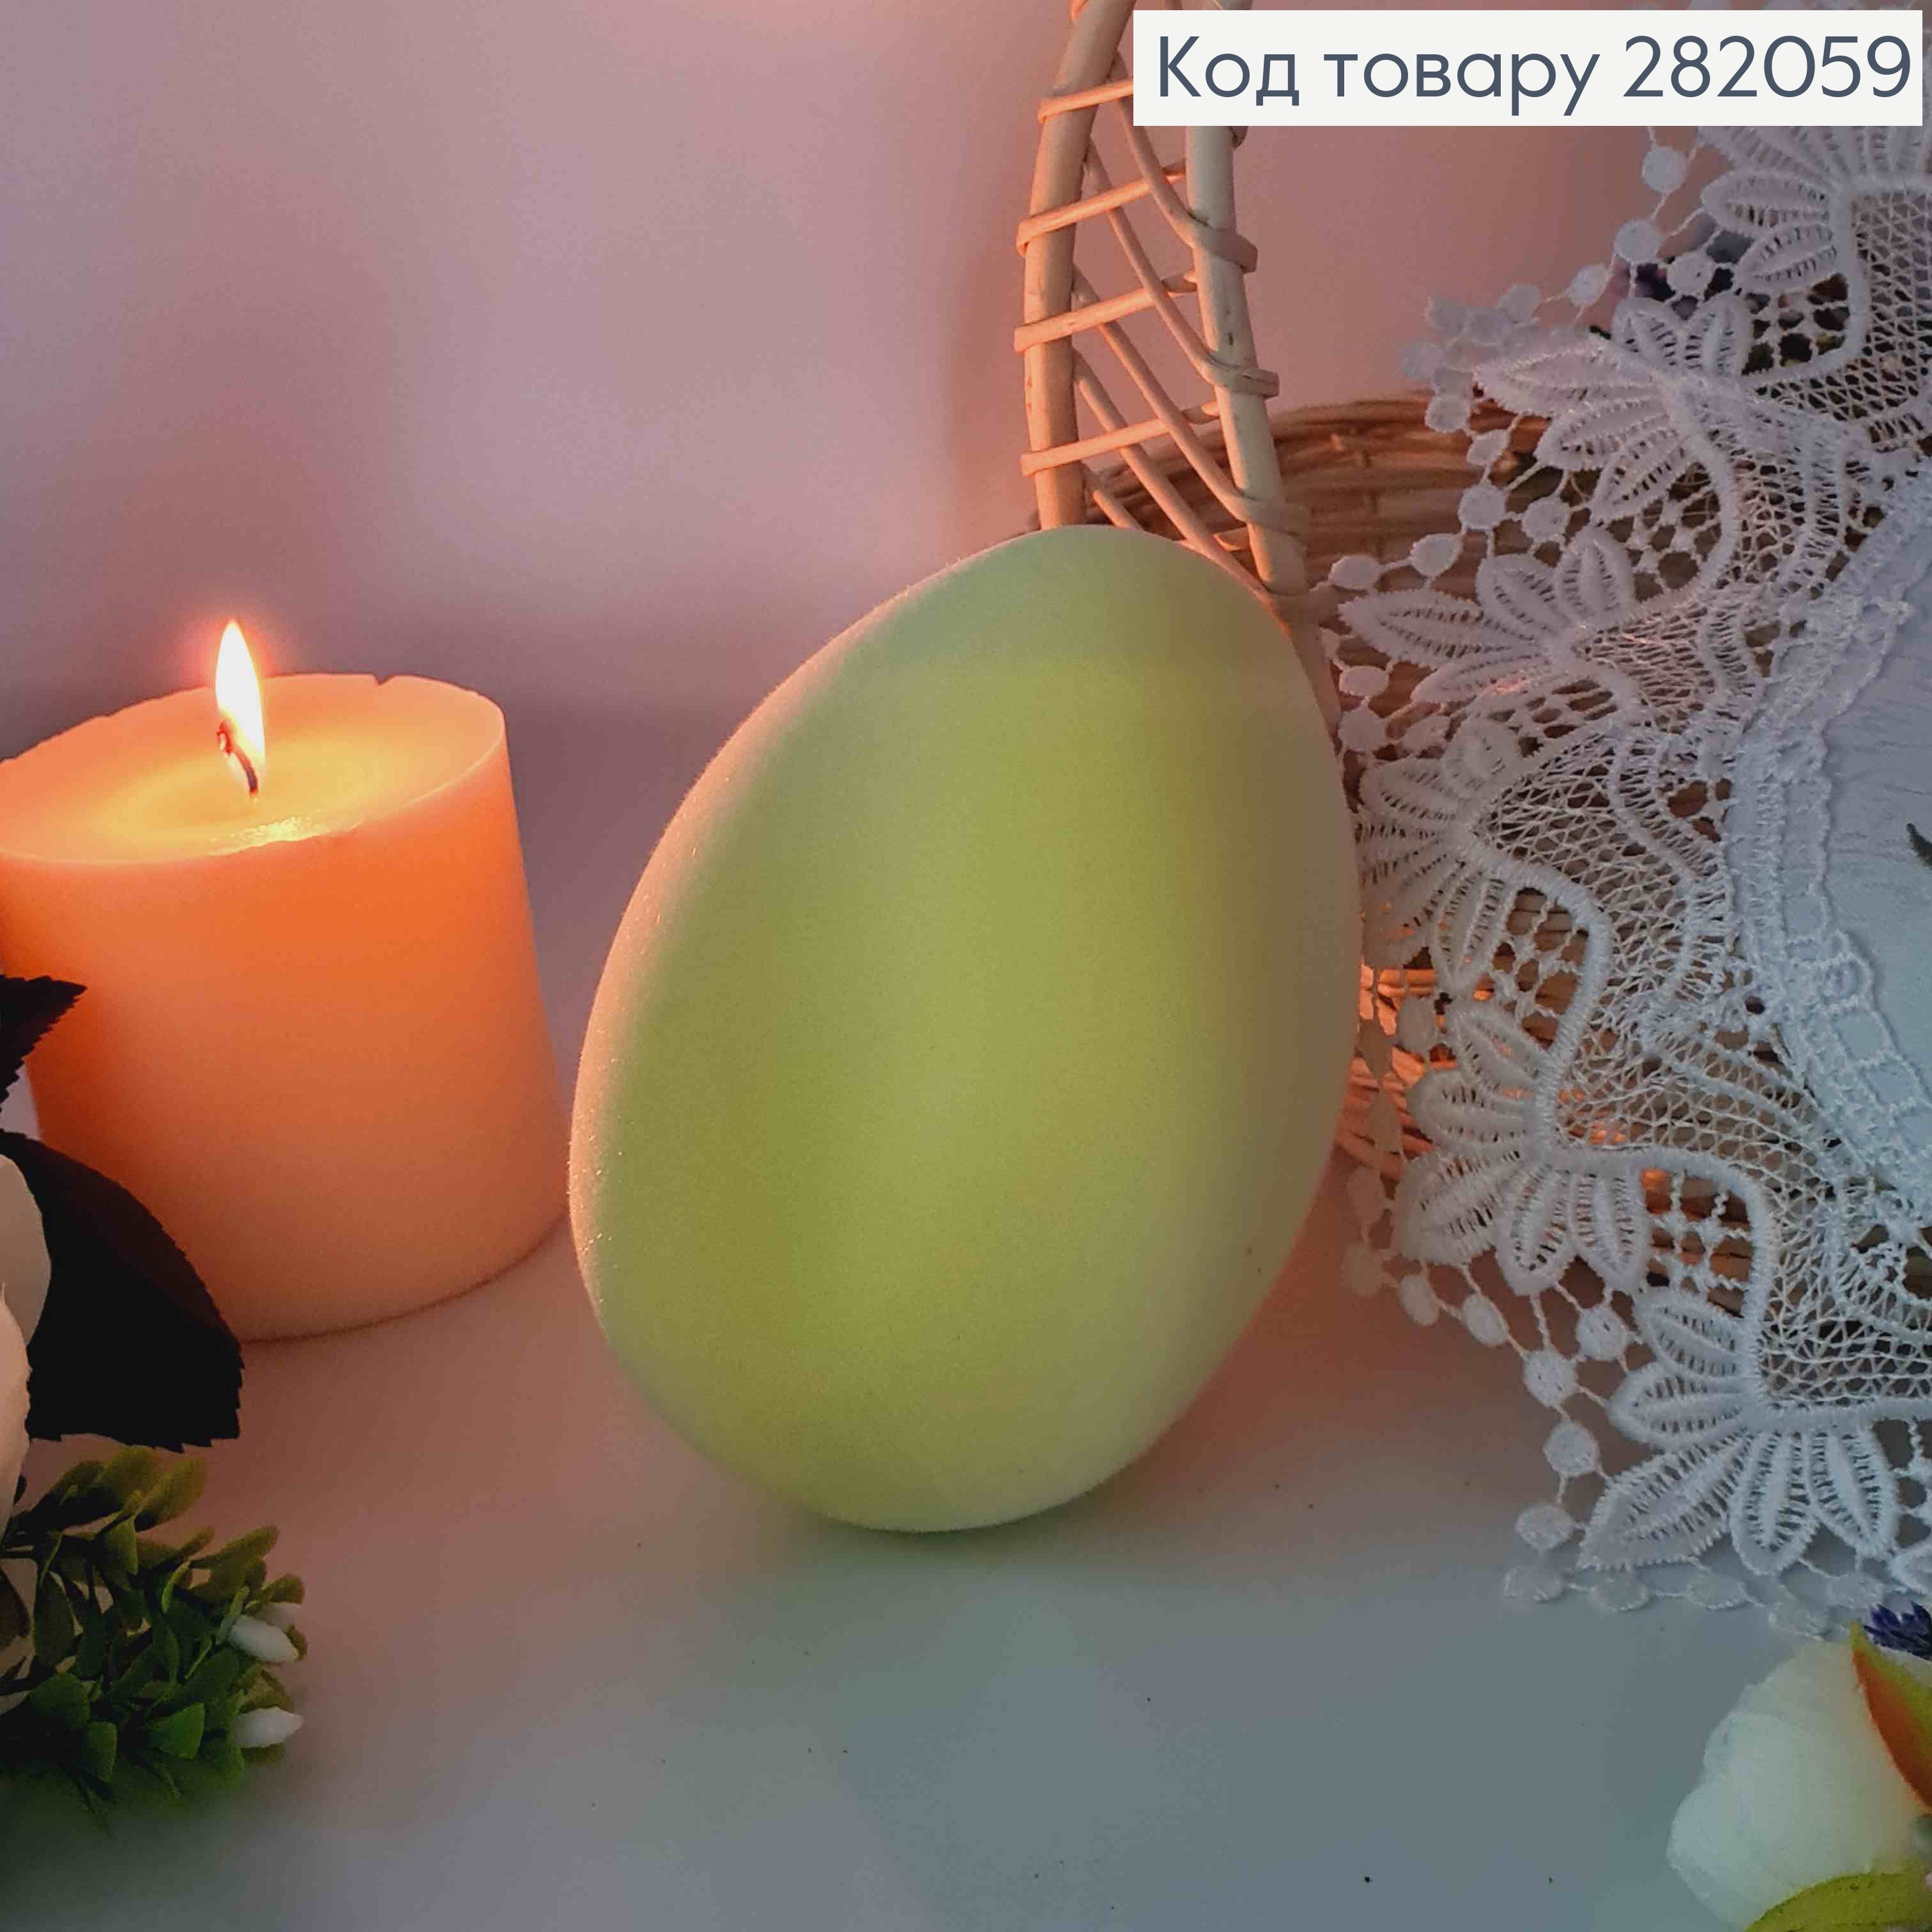 Яйце страусине, Бархат, ЖОВТОГО кольору, 15*10см 282059 фото 2